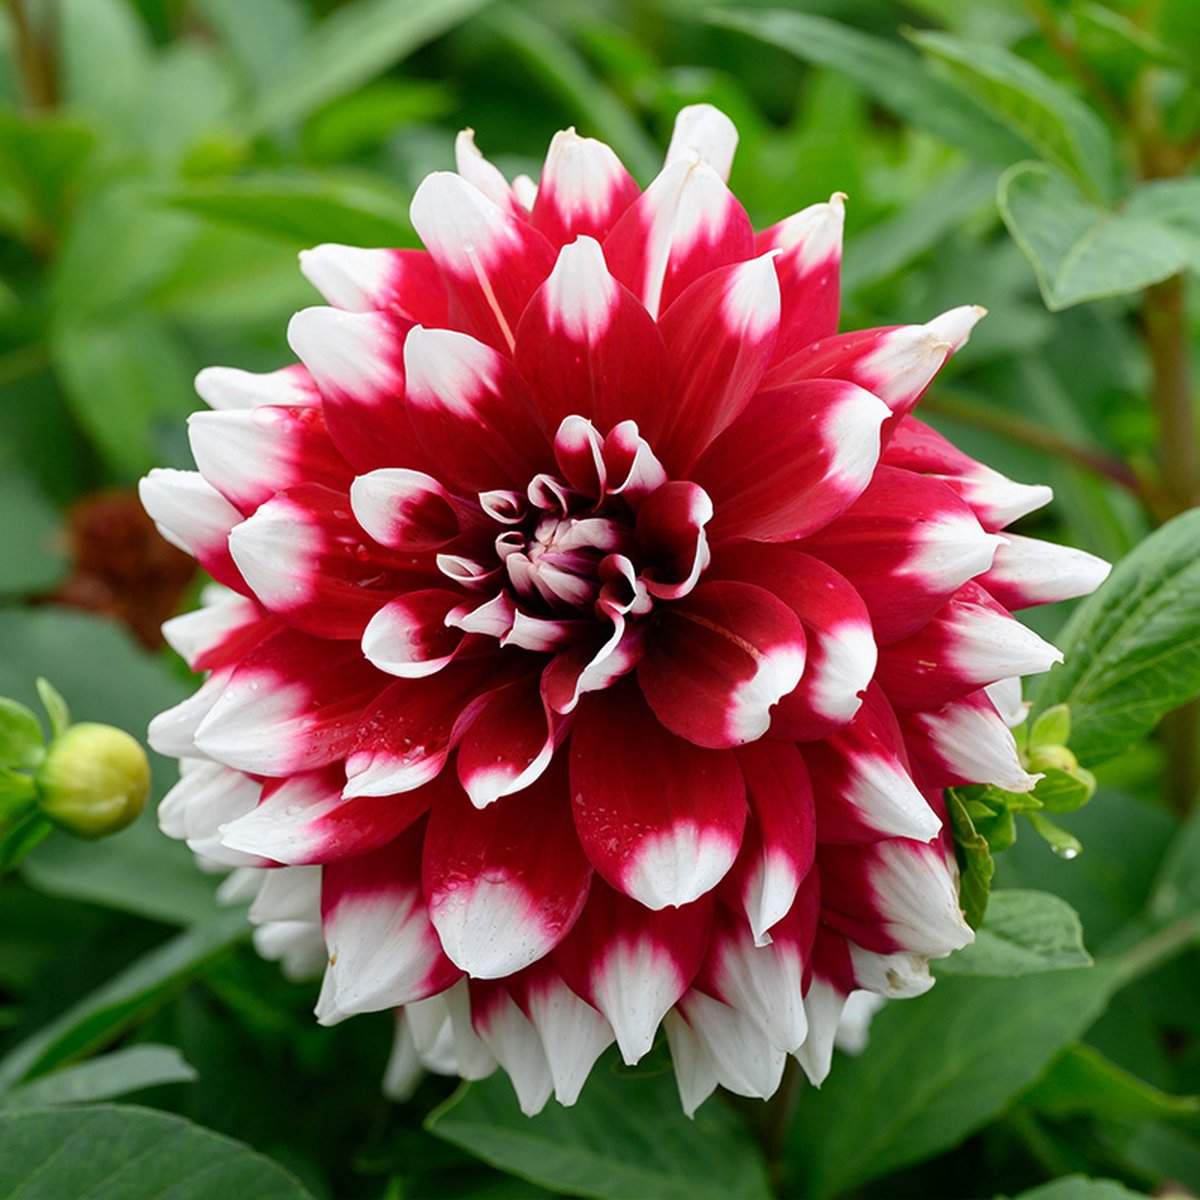 Dahlia Mystery Day | 6 stuks | Decoratieve Dahlia | Knol | Paars | Wit | Dahlia Knollen van Top Kwaliteit | 100% Bloeigarantie | QFB Gardening